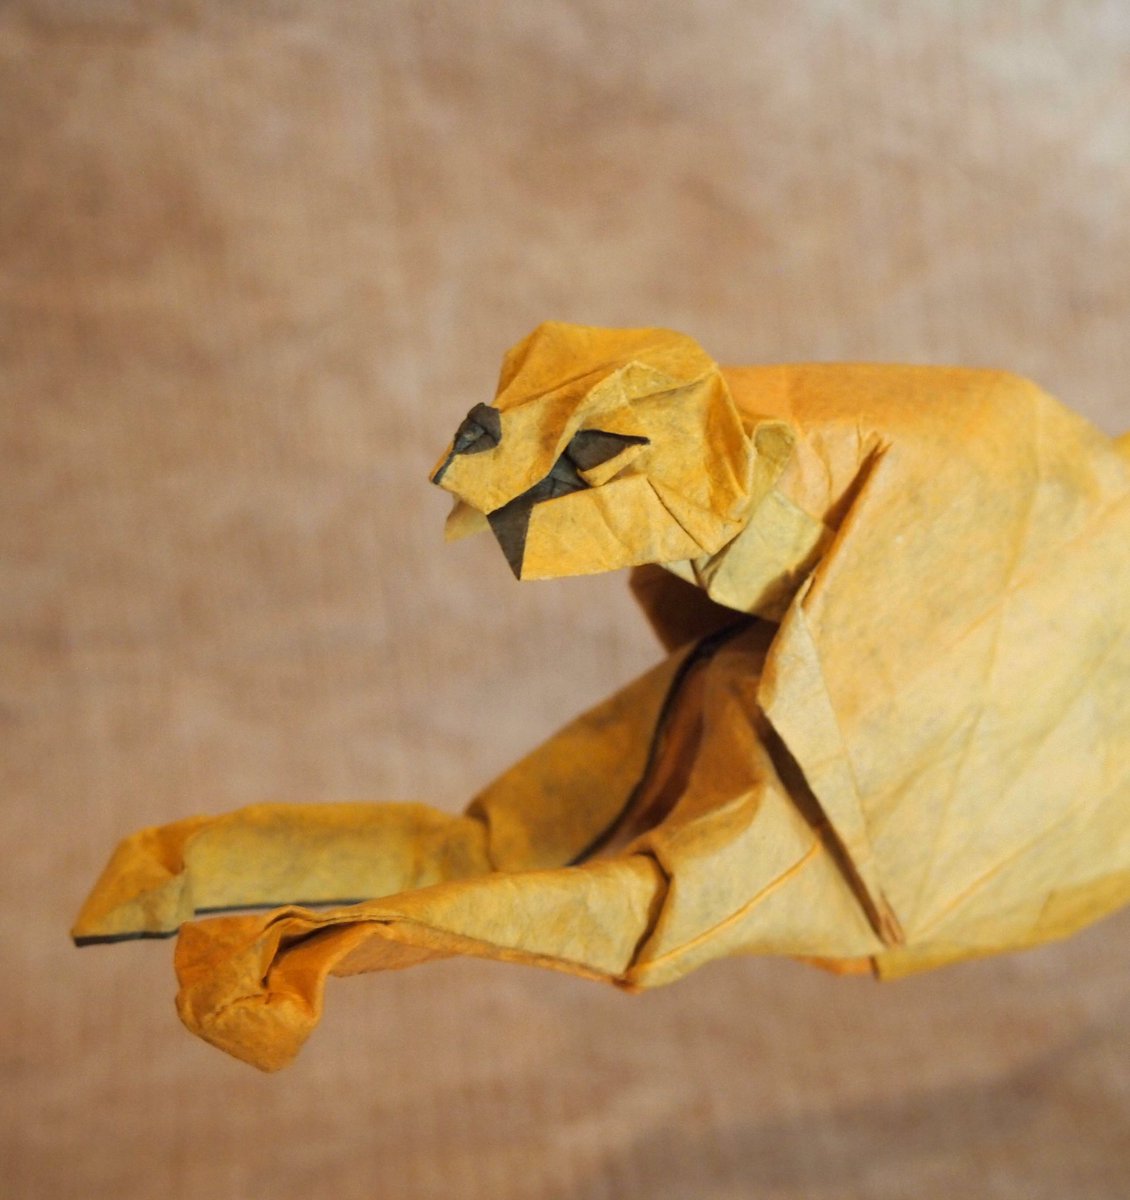 一匹柴犬 折り紙作品 チーター 創作 折り 一匹柴犬 正方形1枚より 珍しく手足を折り出してから頭を折る手順で創作 それが上手くハマった気がしました Origami Cheetah 折り紙作品 折り紙 チーター